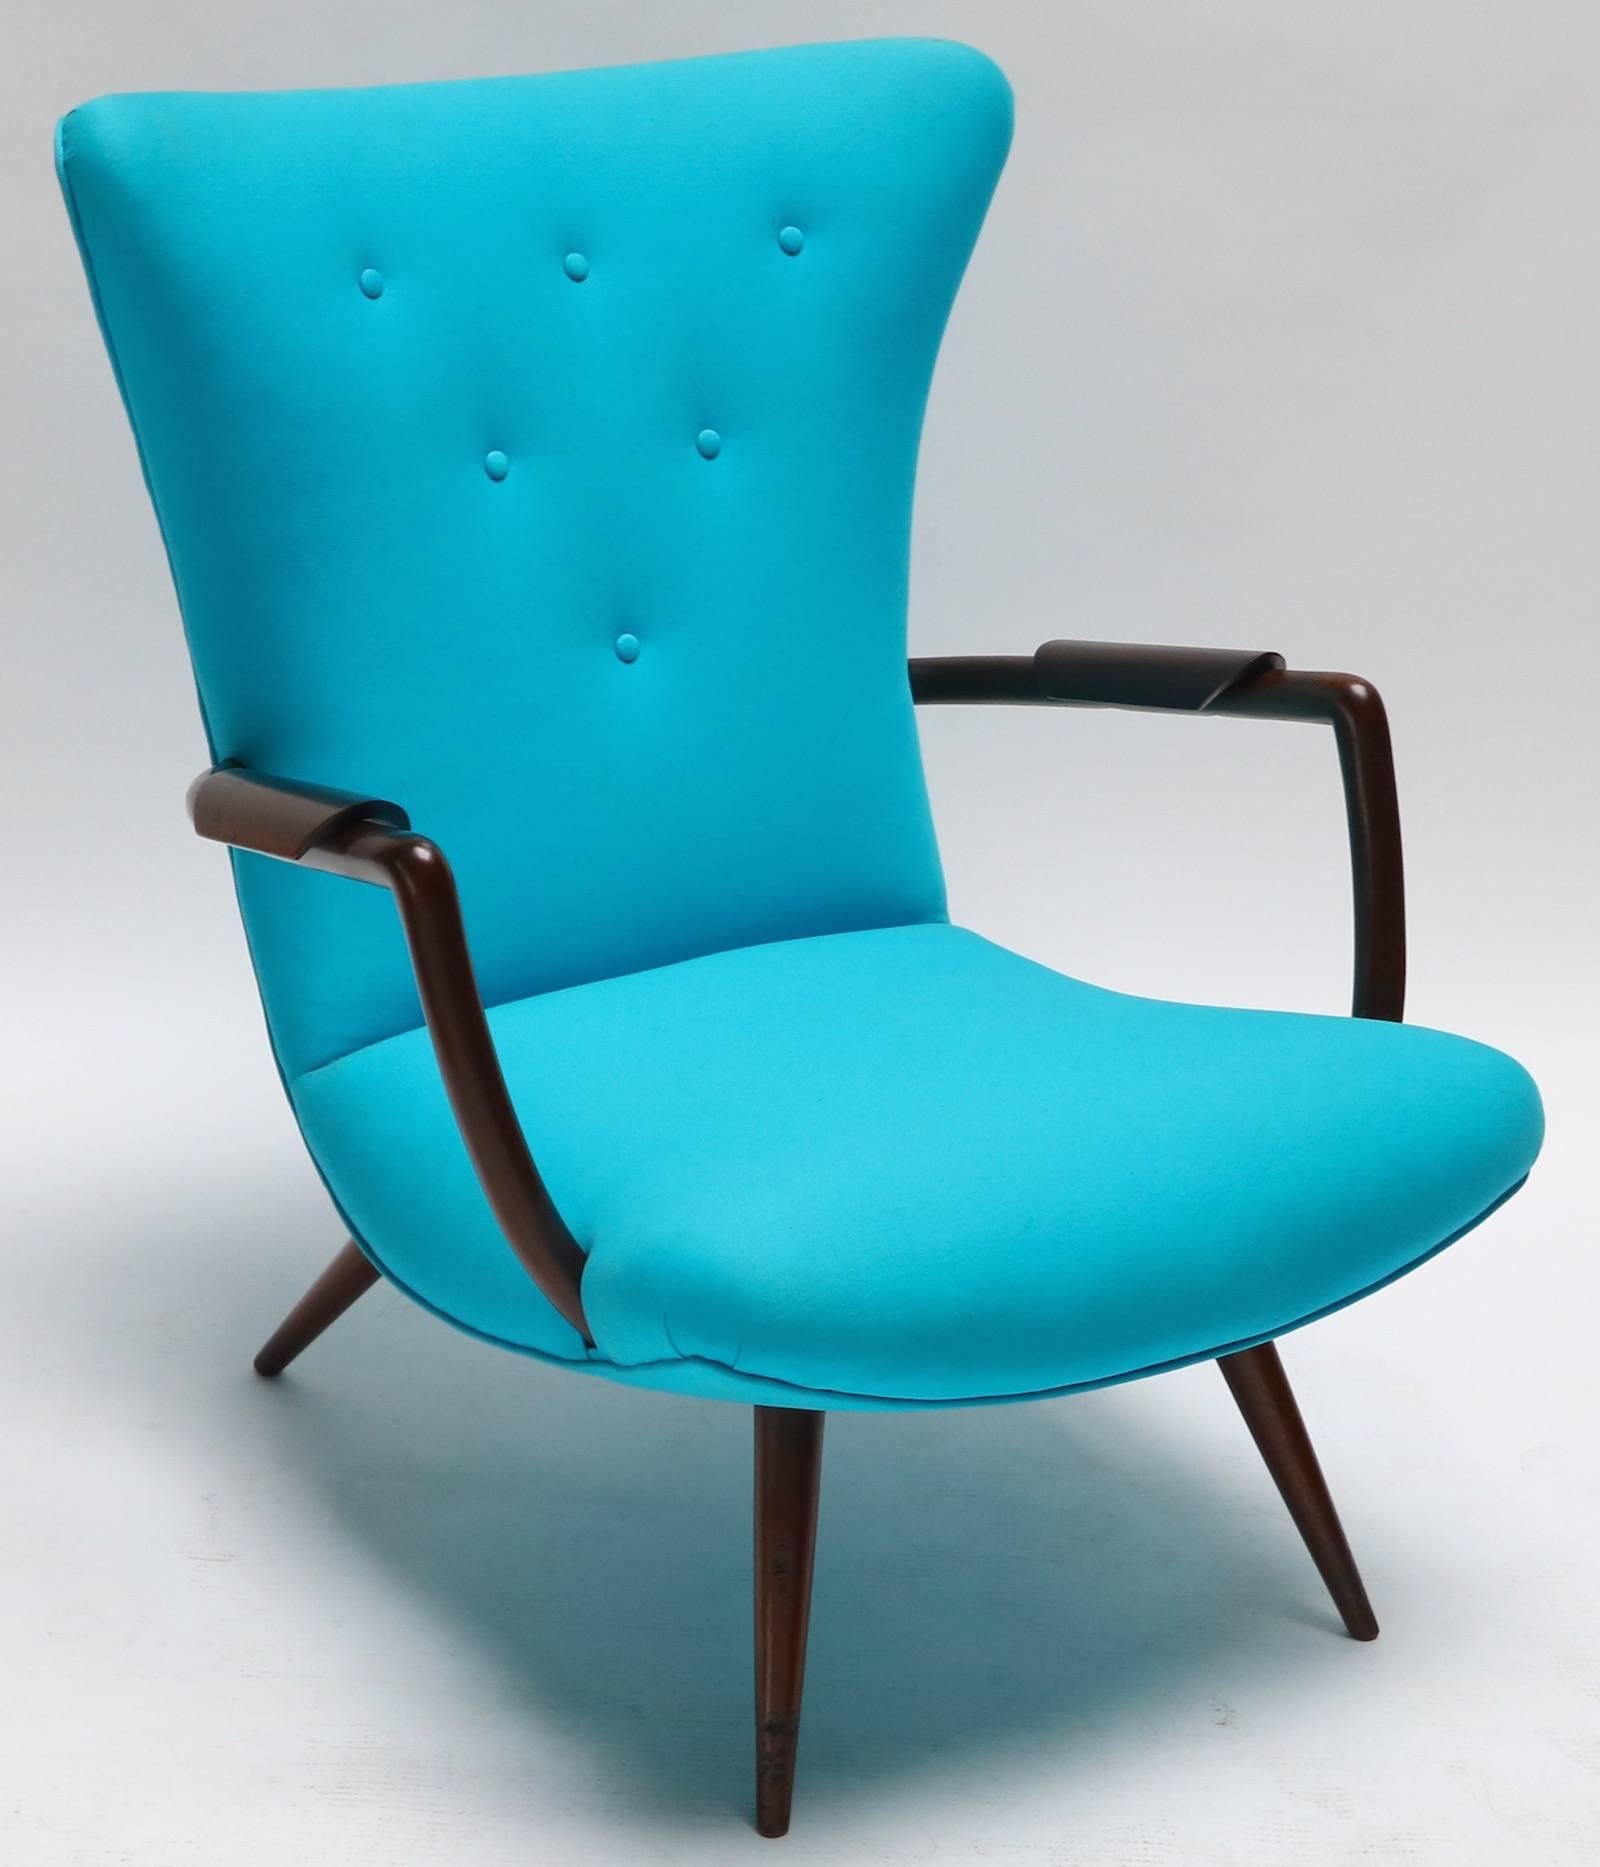 Paire de fauteuils brésiliens Paulistana dans le style de Giuseppe Scapinelli avec des accoudoirs en bois uniques tapissés en sergé bleu turquoise.